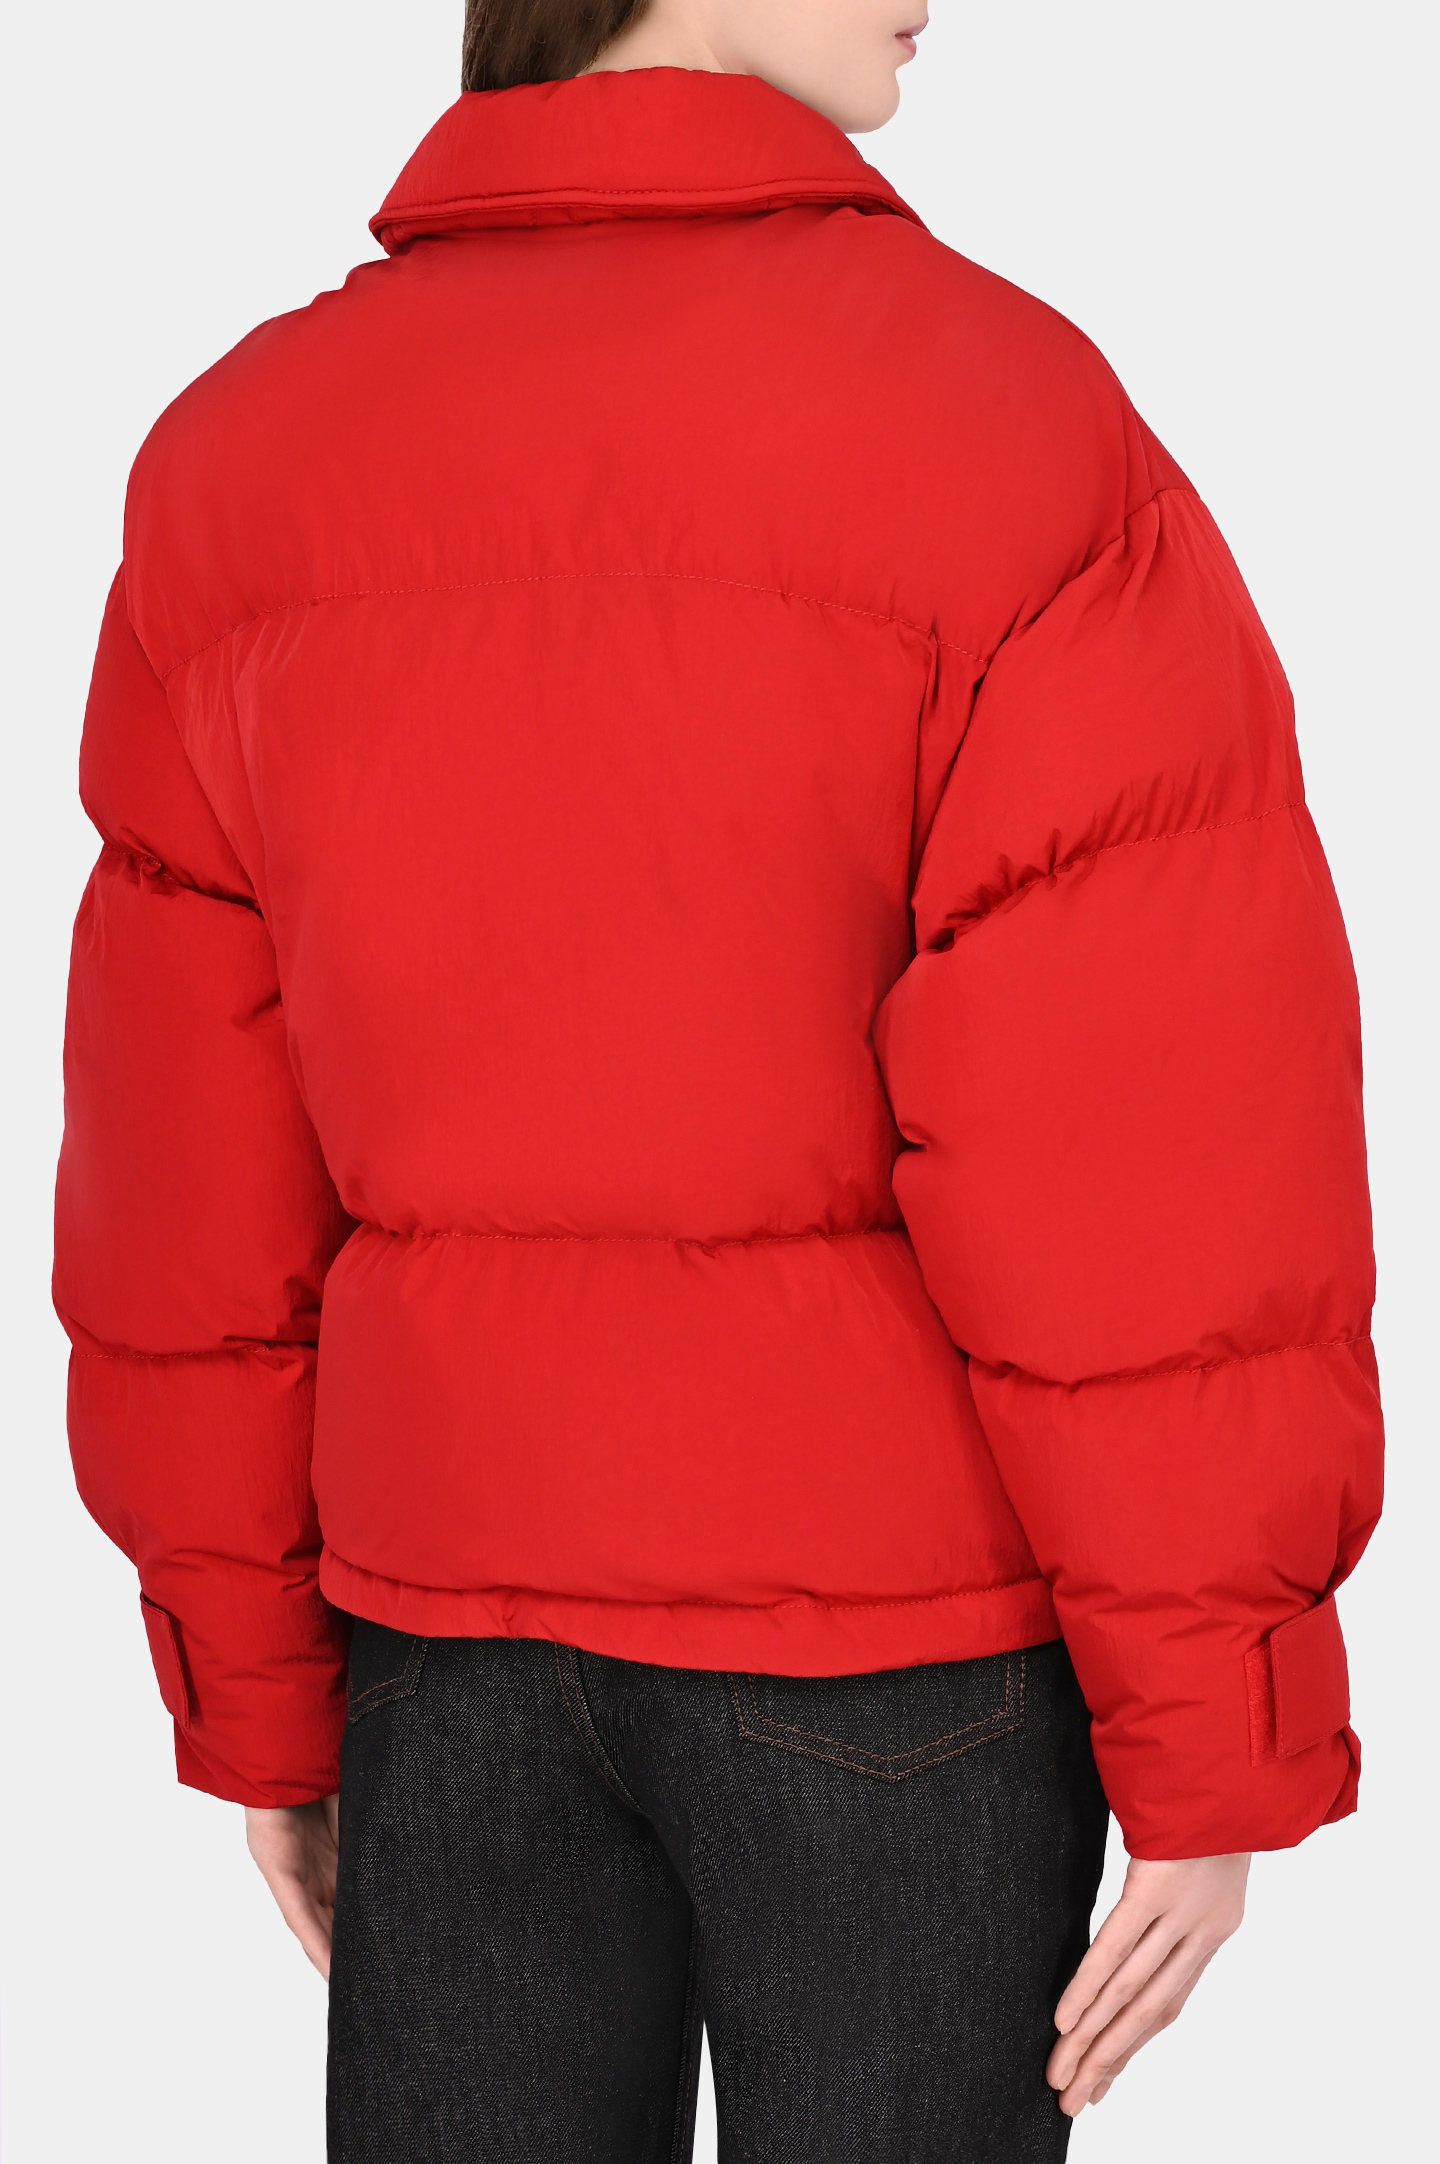 Куртка JACQUEMUS 213BL003, цвет: Красный, Женский